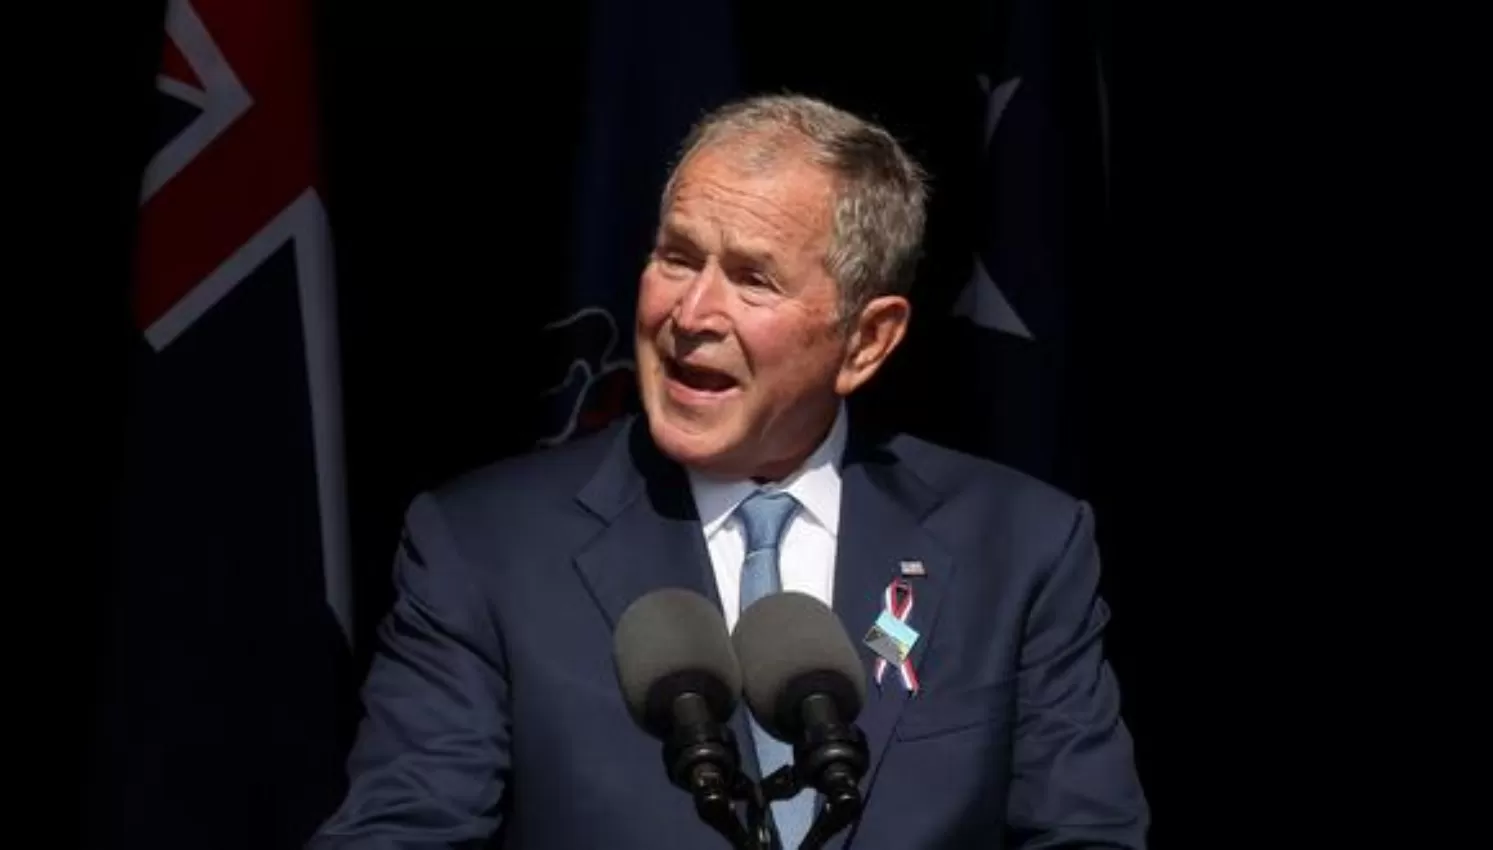 ATENTADOS DEL 11-S. El ex presidente estadounidense, George W. Bush, pidió luchar contra los extremismos en su discurso.